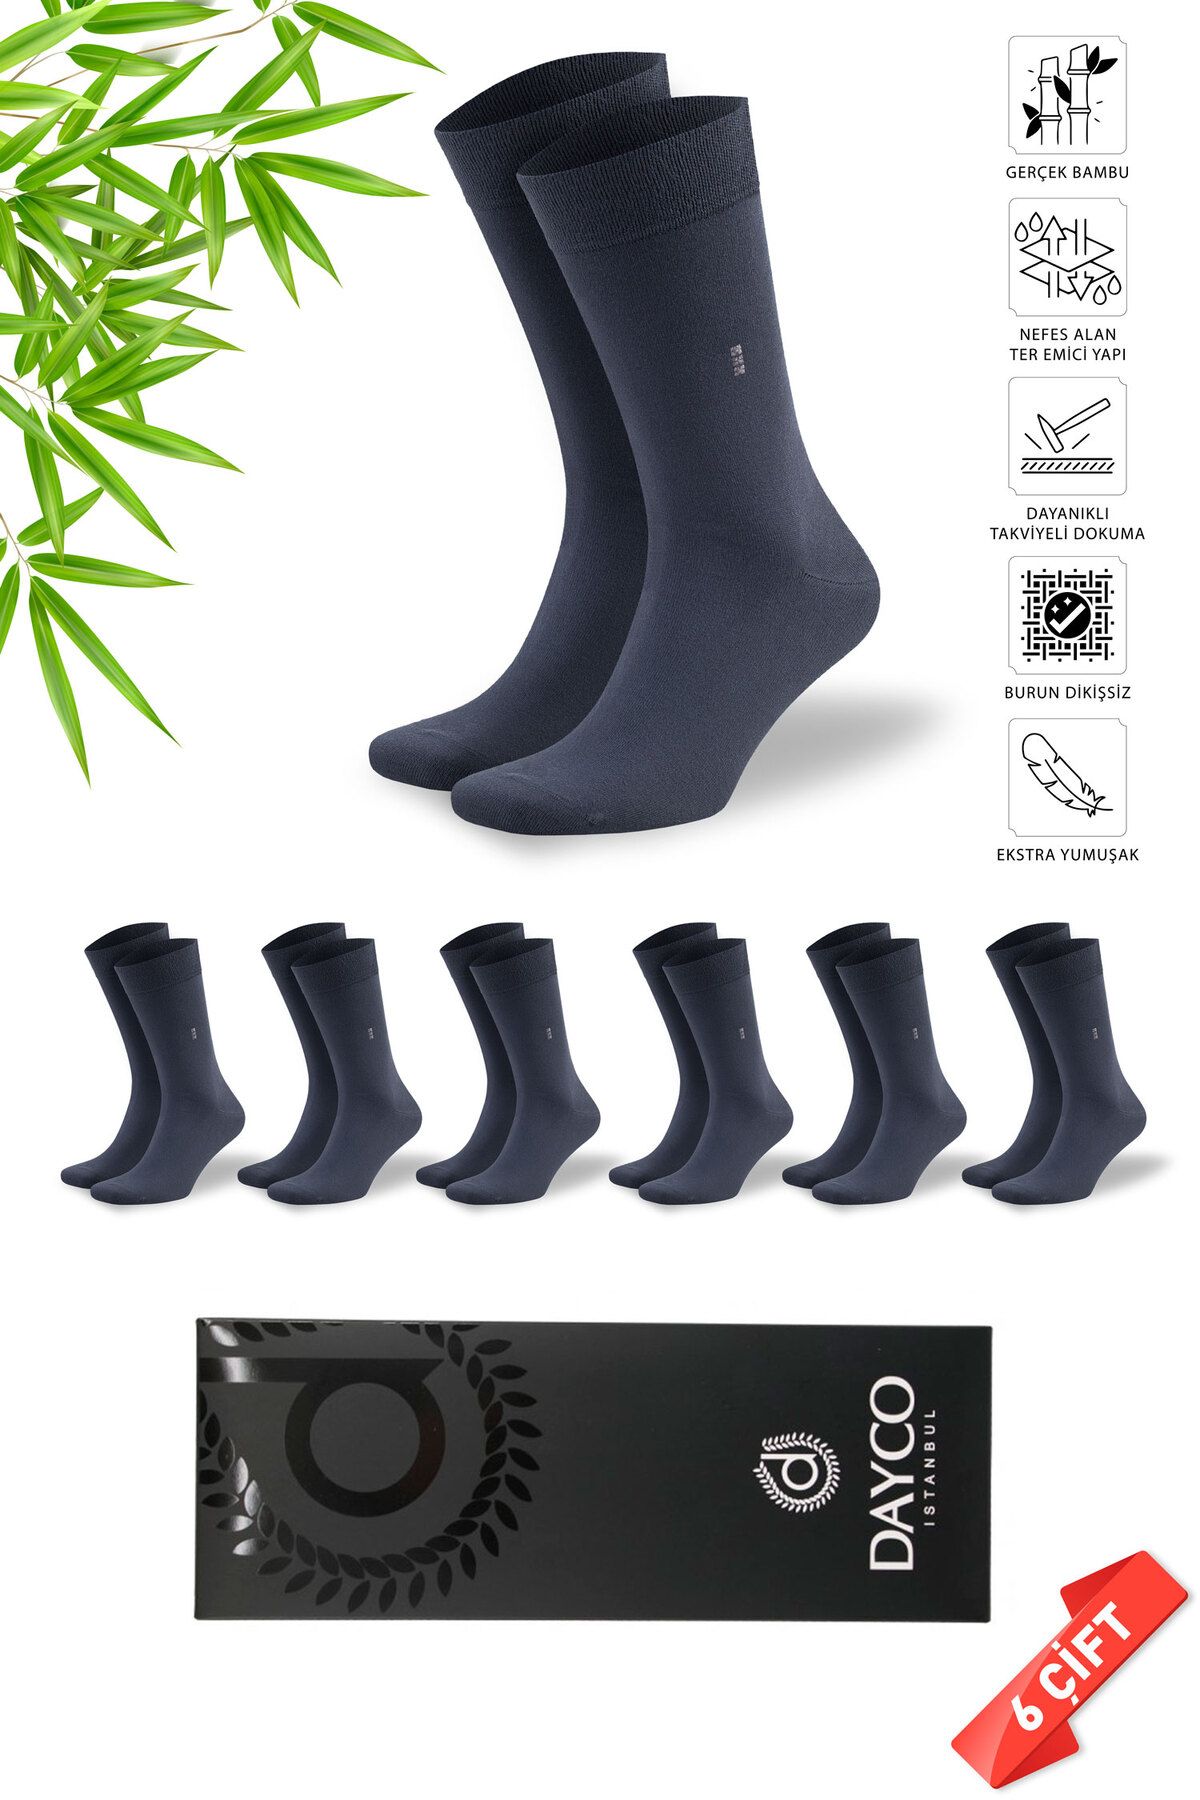 DAYCO Premium Dikişsiz Klasik Uzun Füme Yazlık Erkek Bambu Soket Çorap 6lı Hediyelik Kutulu Set